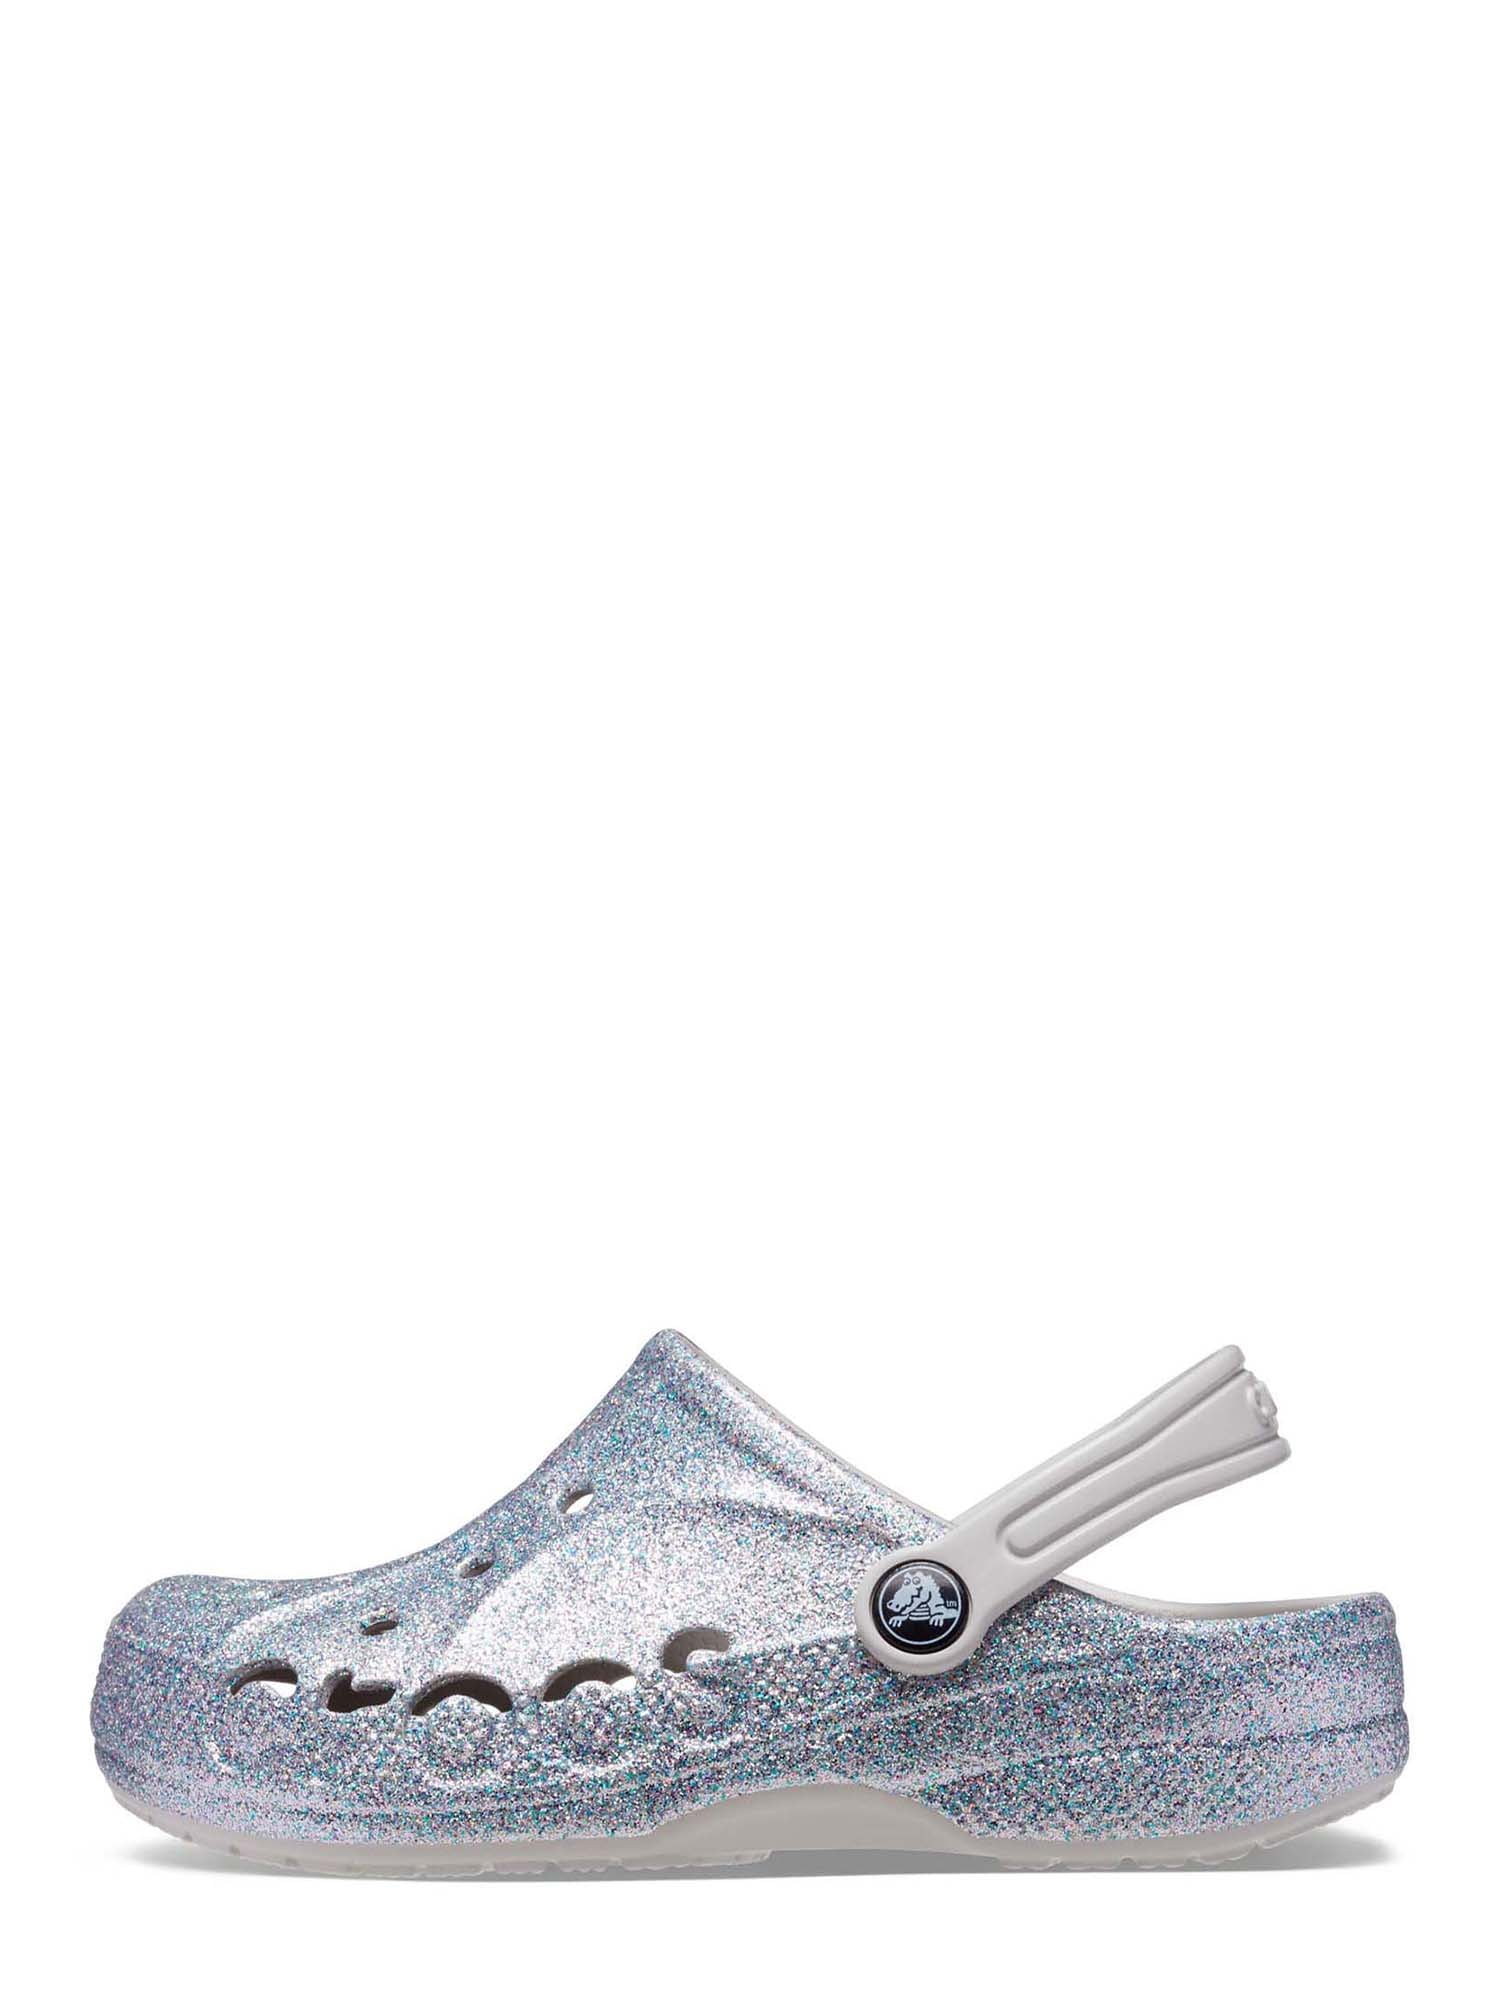 Crocs / Baya Glitter Clog